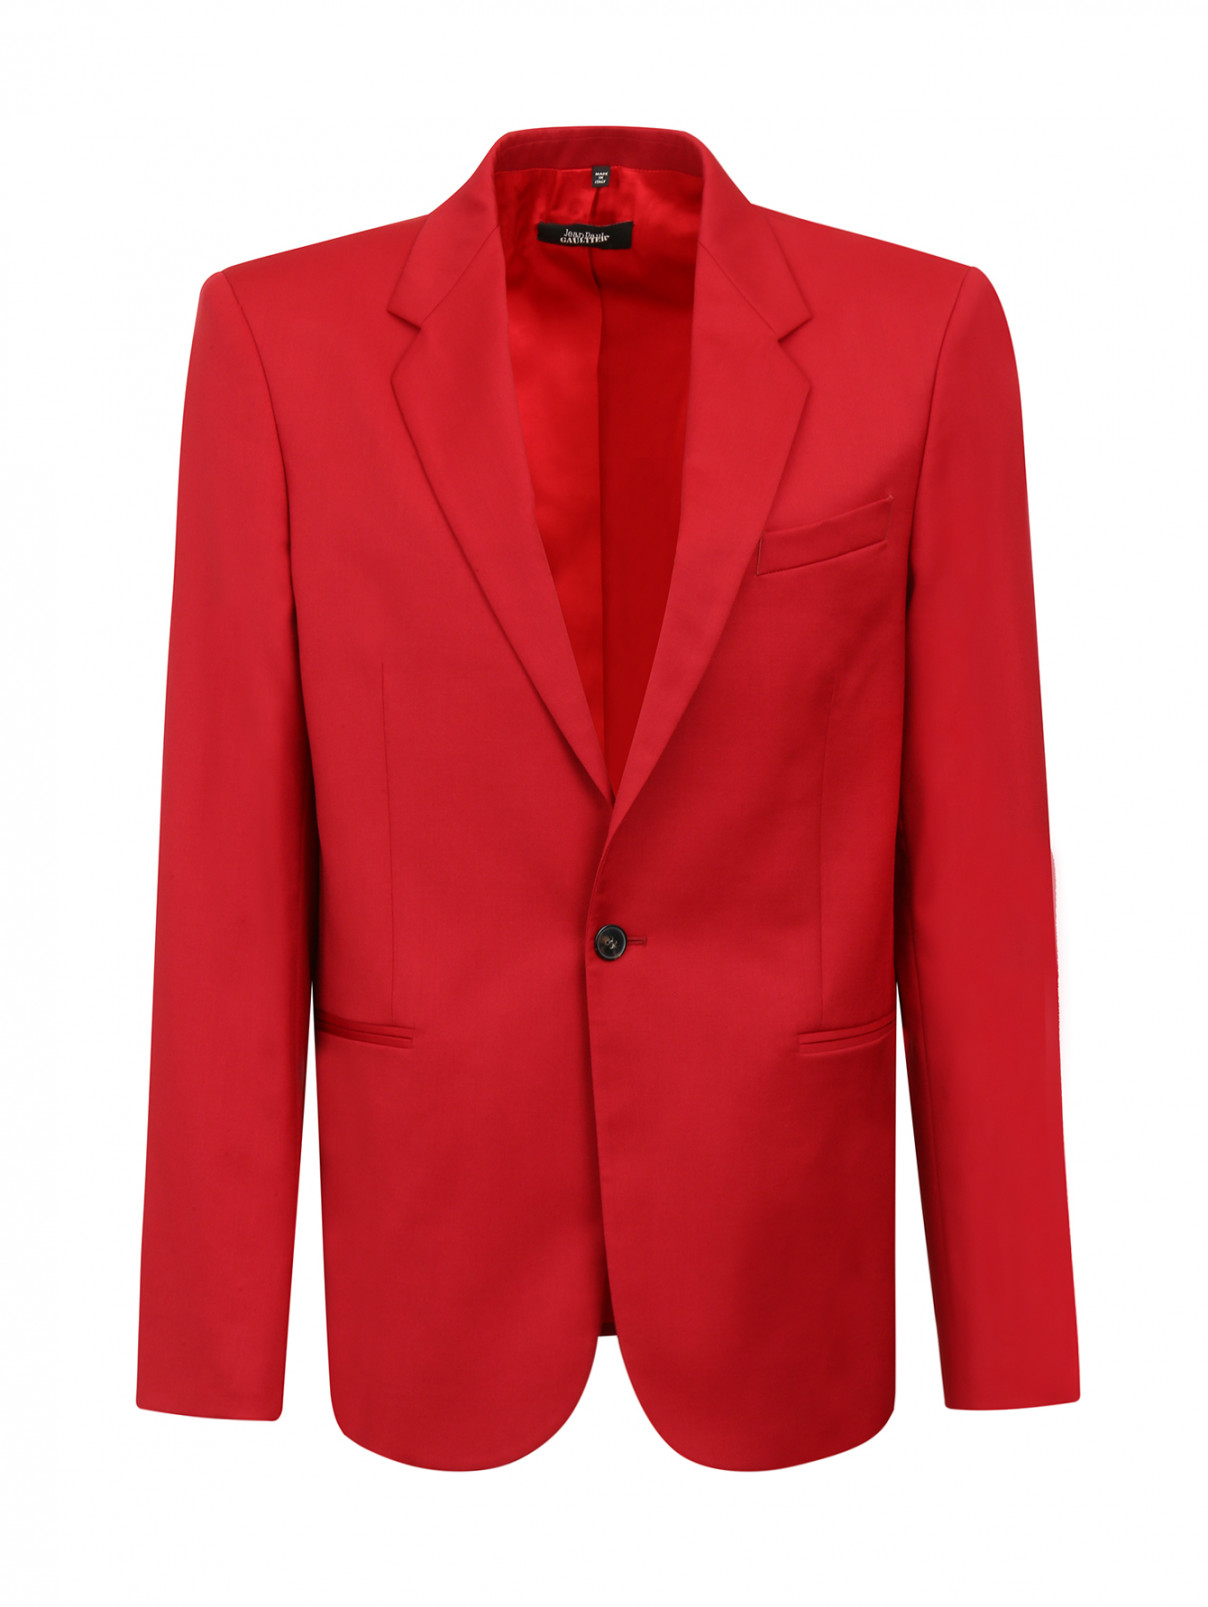 Однобортный пиджак из шерсти Jean Paul Gaultier  –  Общий вид  – Цвет:  Красный